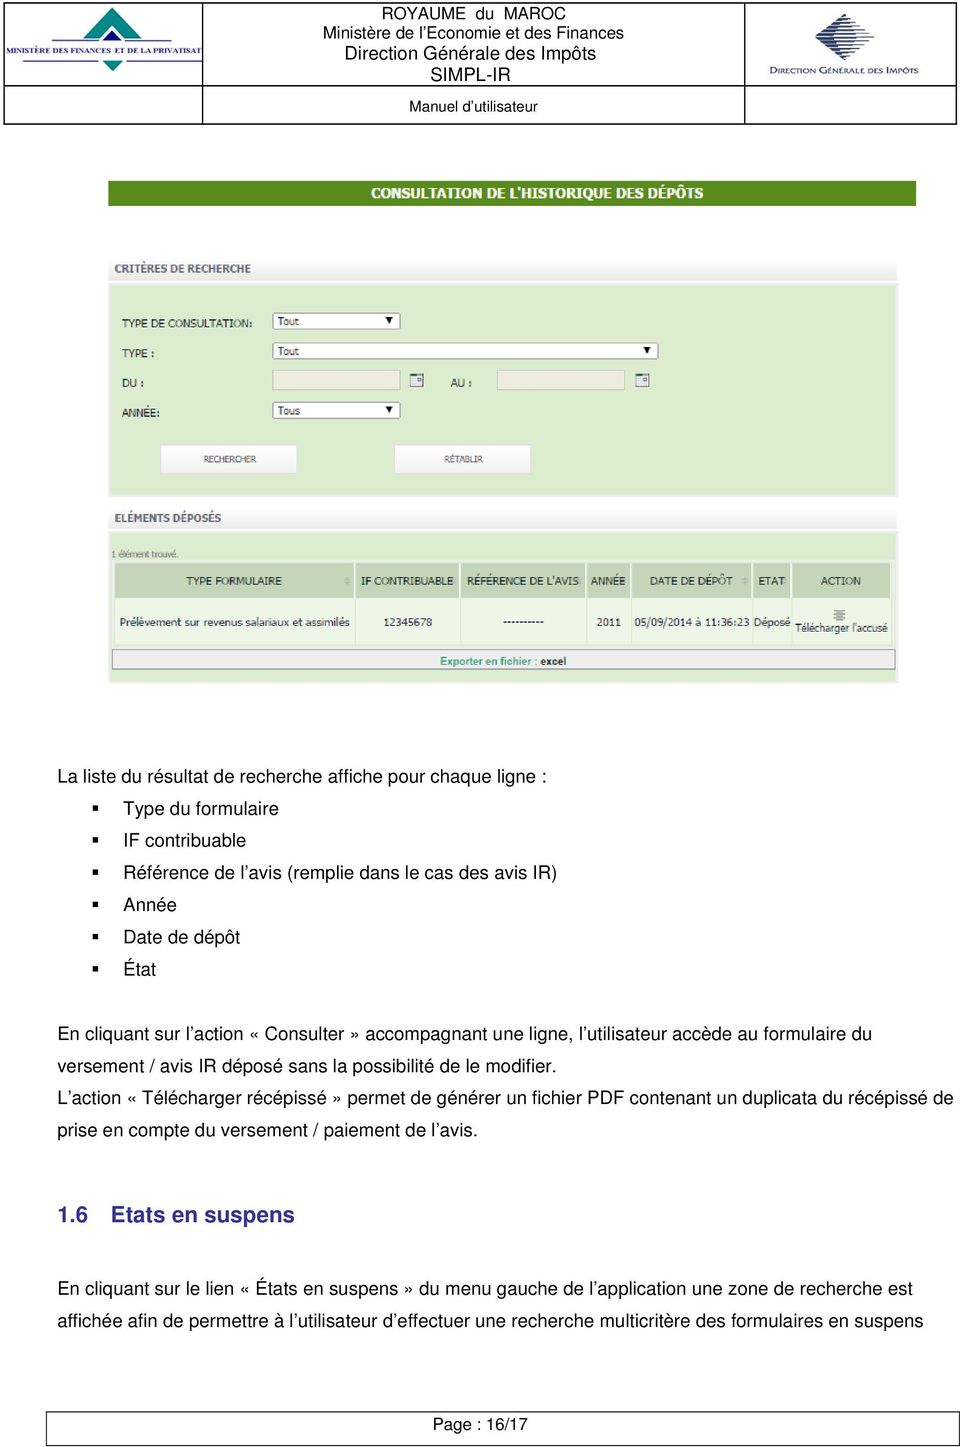 L action «Télécharger récépissé» permet de générer un fichier PDF contenant un duplicata du récépissé de prise en compte du versement / paiement de l avis. 1.